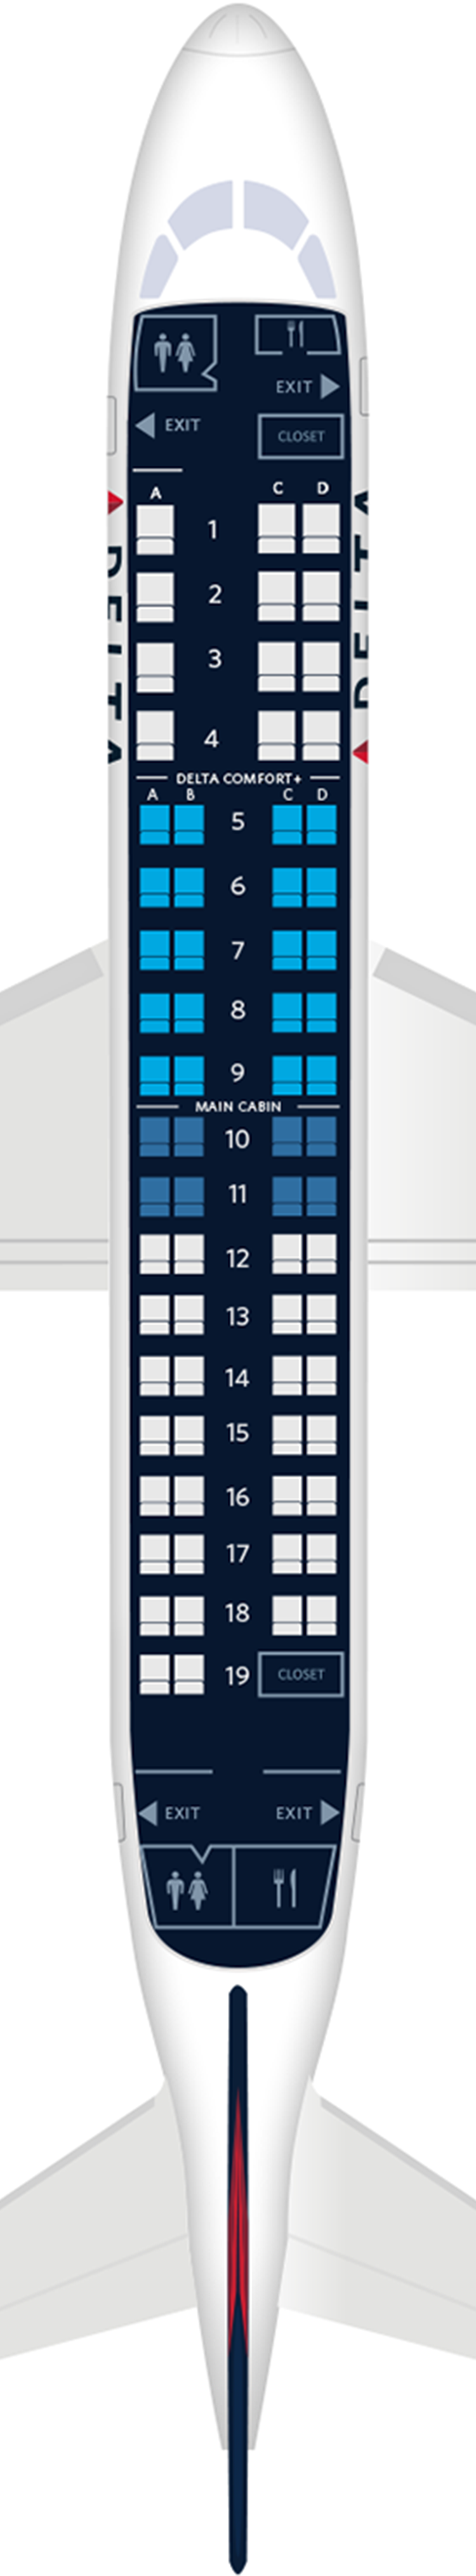 Embraer ERJ-175 Seat Maps, Specs & Amenities | Delta Air Lines